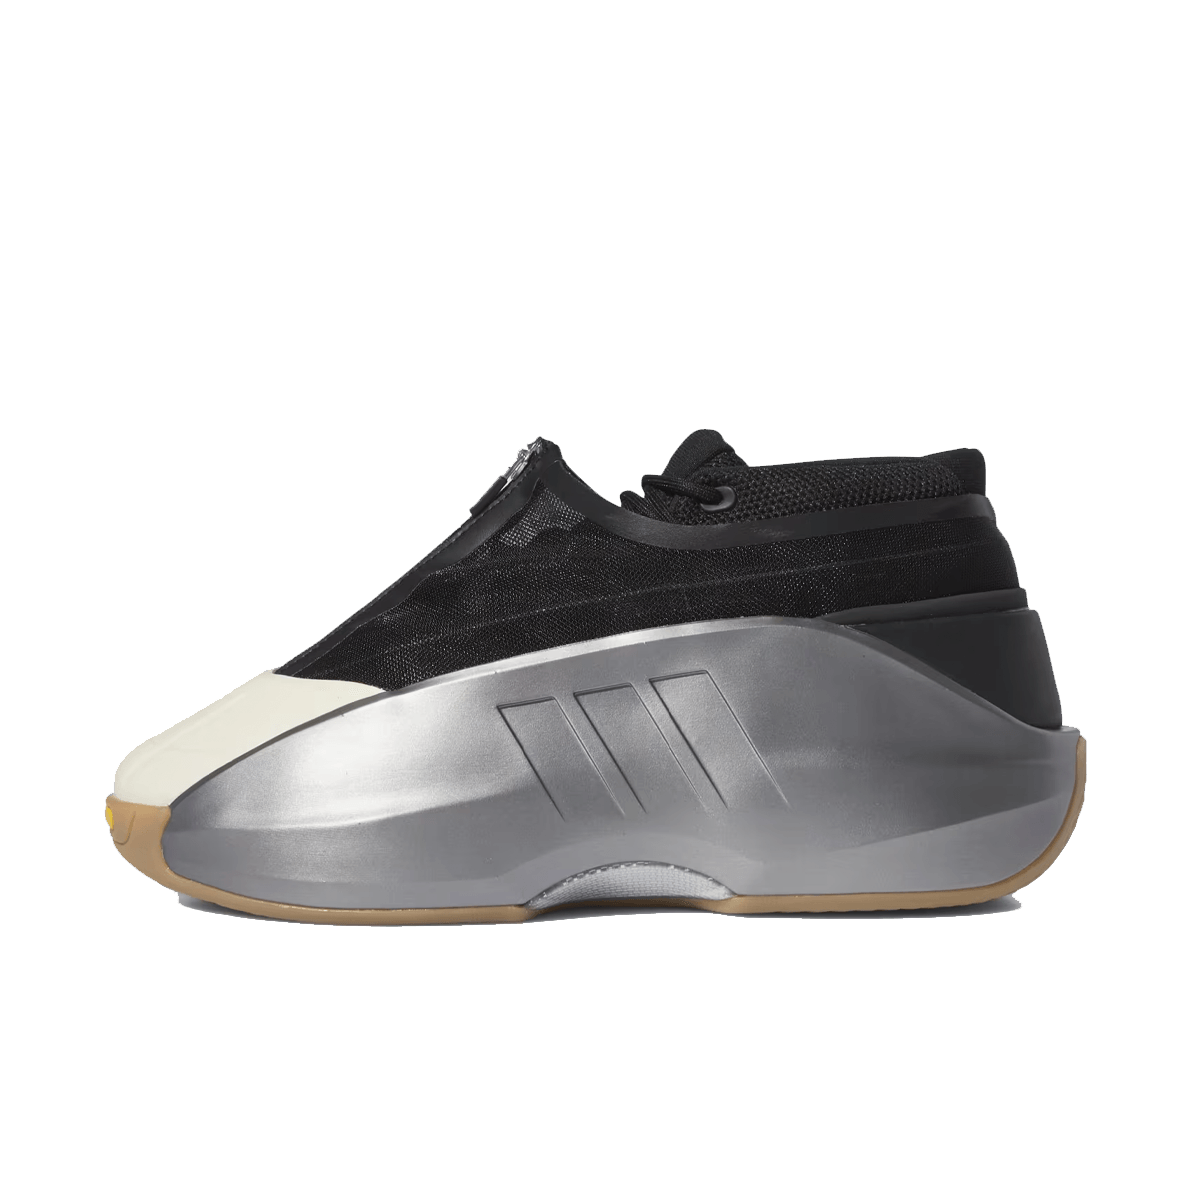 adidas Crazy IIInfinity 'Silver Metallic'